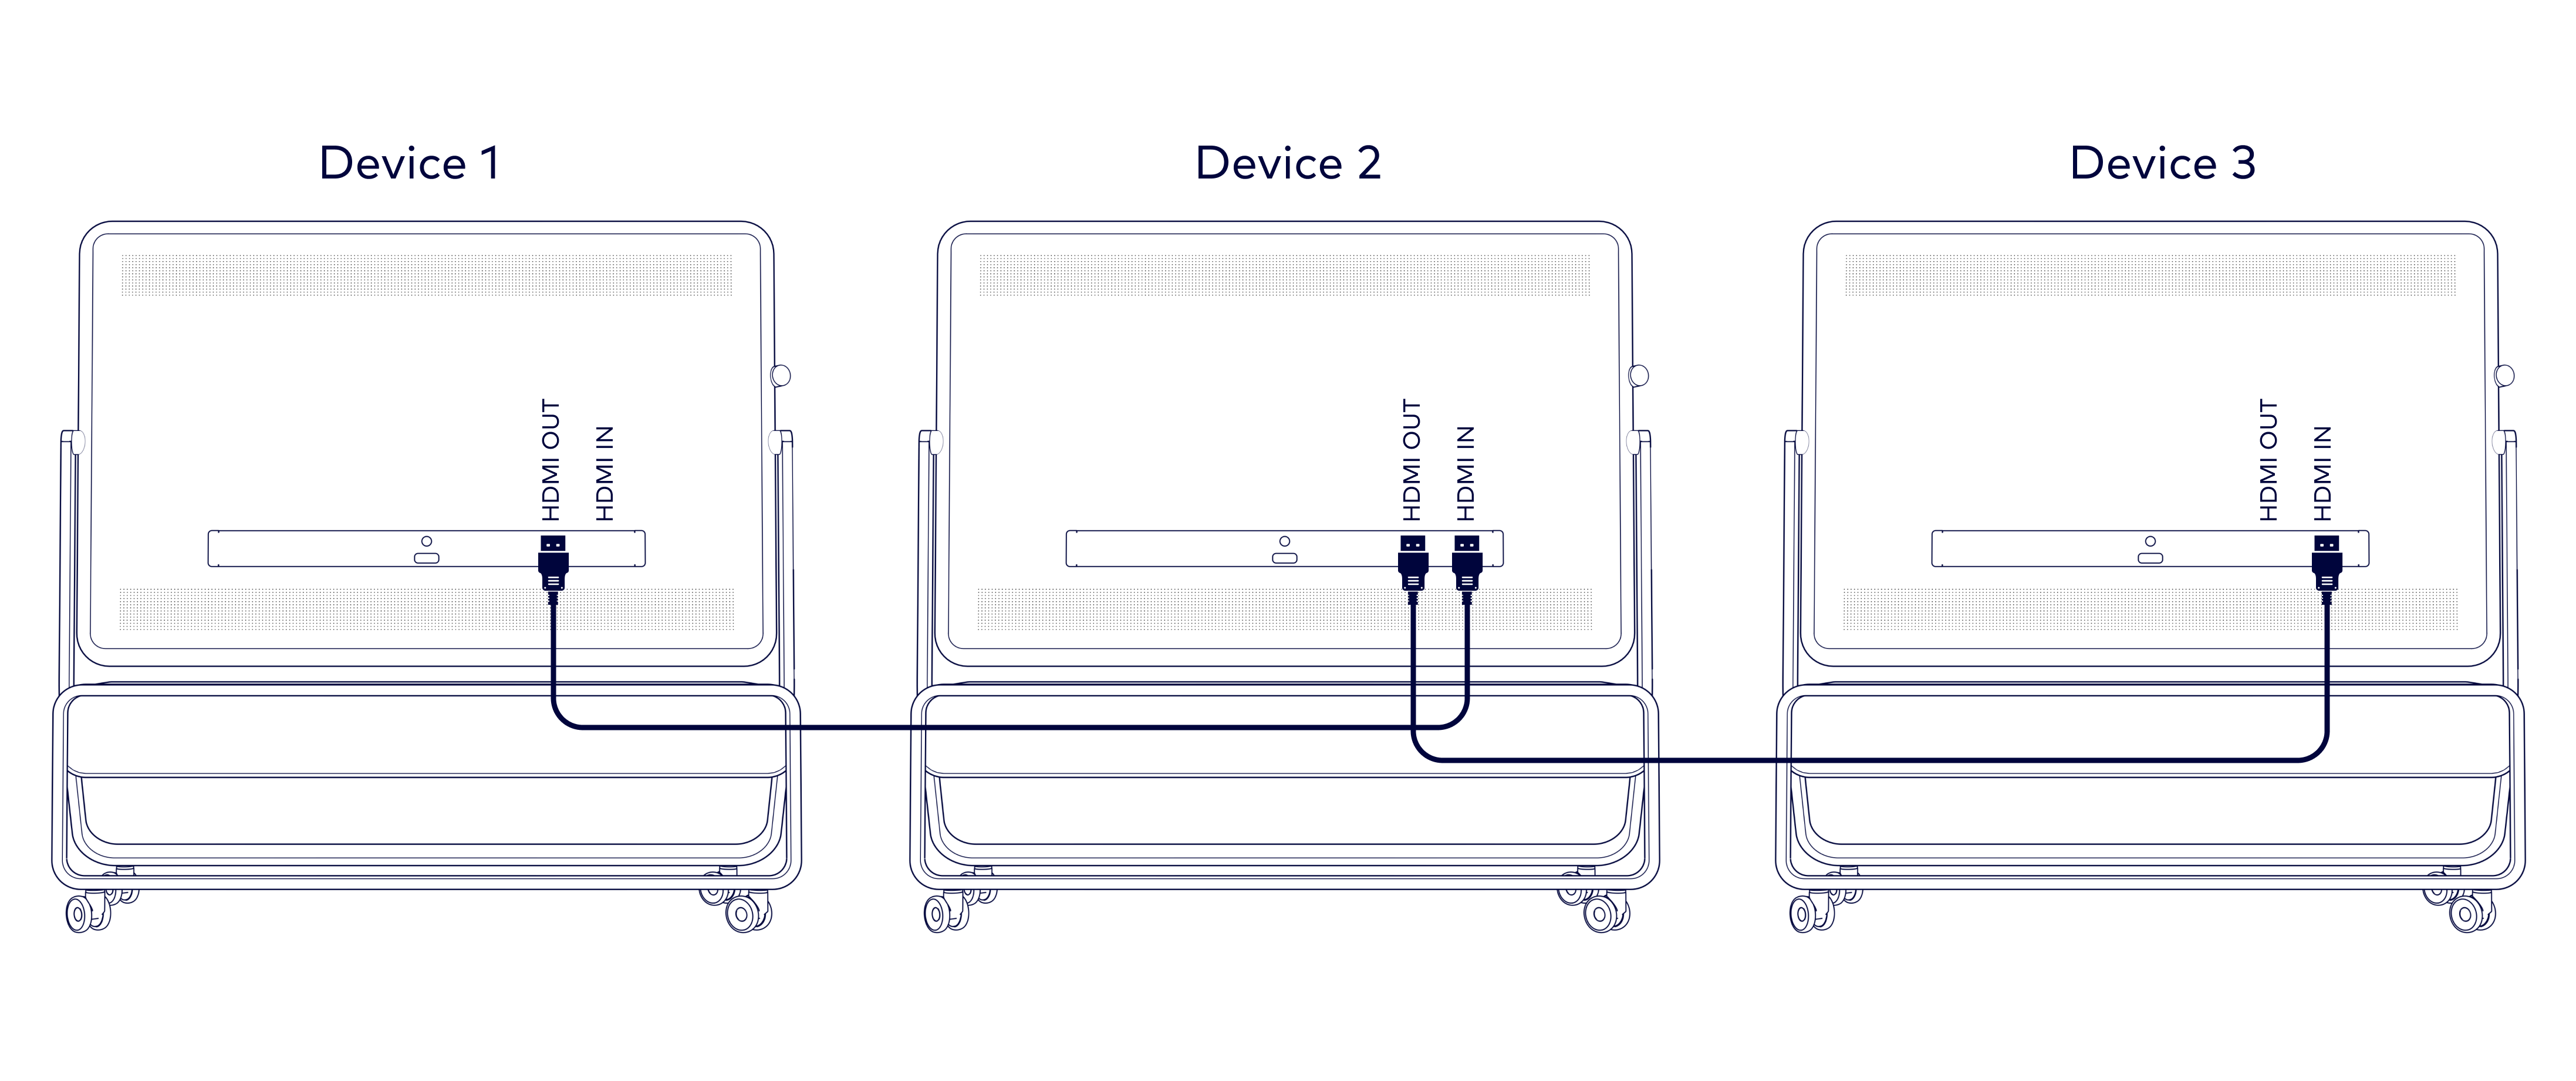 hdmi-out-device-wiring-scheme-en.png